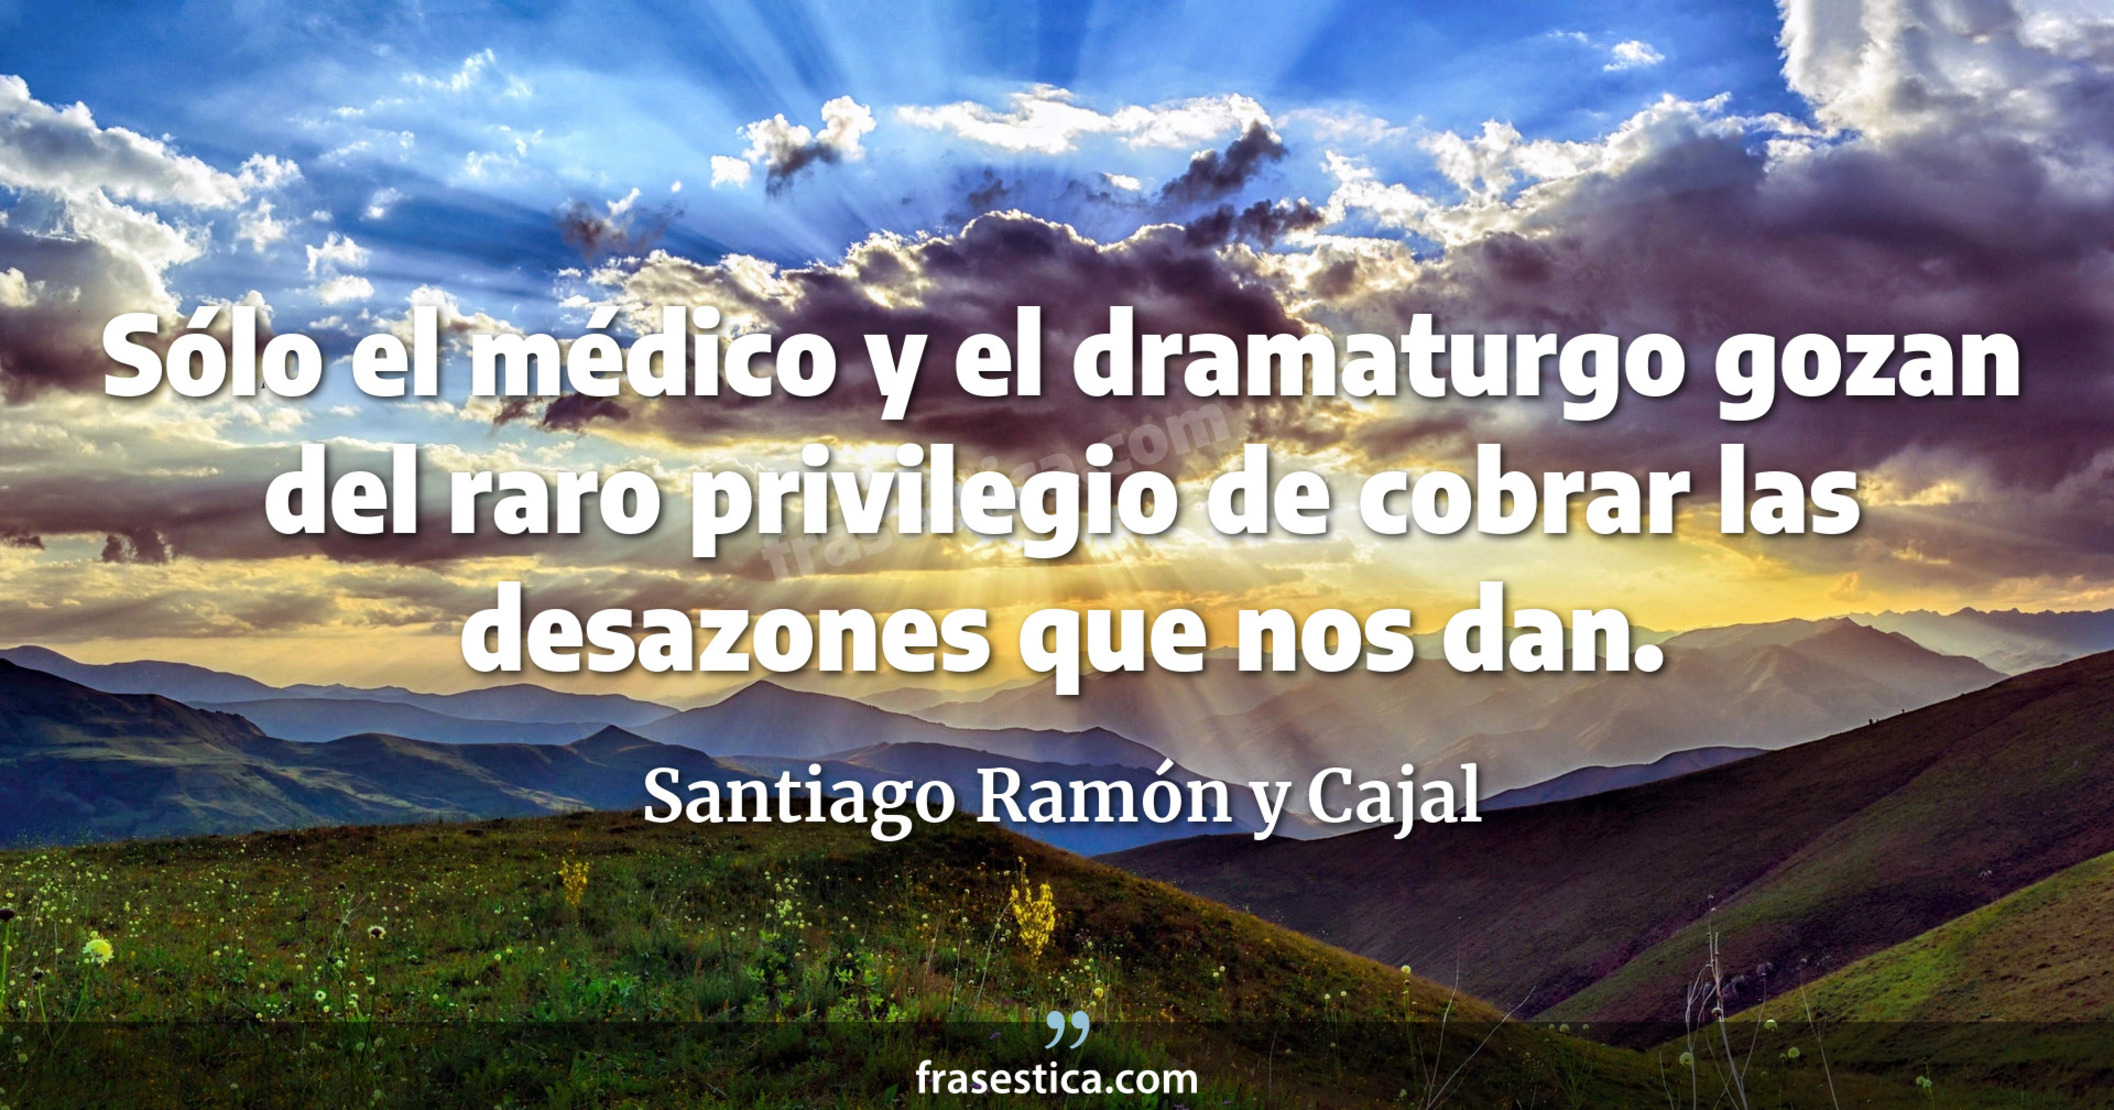 Sólo el médico y el dramaturgo gozan del raro privilegio de cobrar las desazones que nos dan. - Santiago Ramón y Cajal